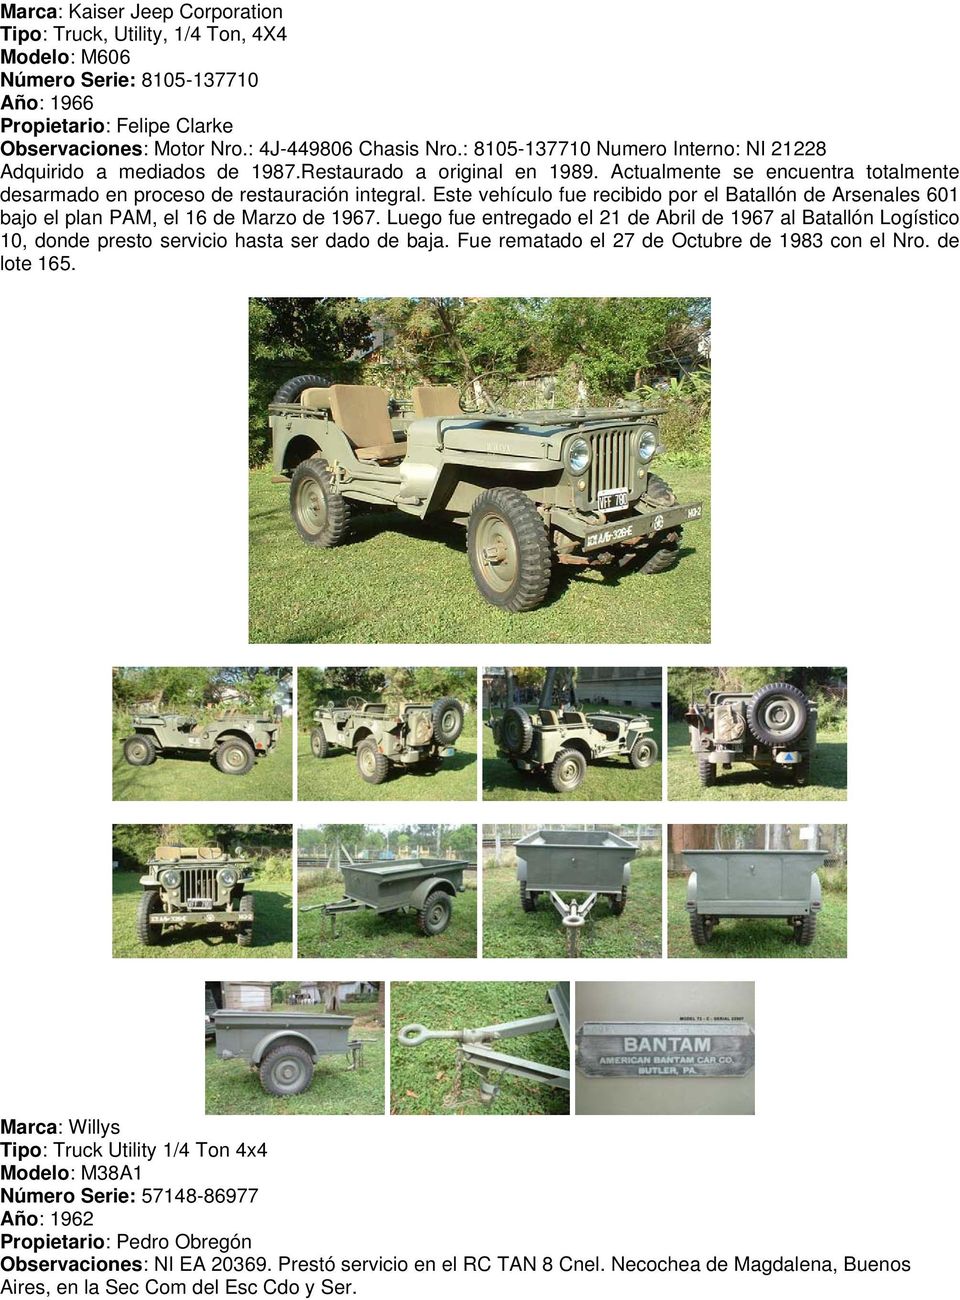 Este vehículo fue recibido por el Batallón de Arsenales 601 bajo el plan PAM, el 16 de Marzo de 1967.